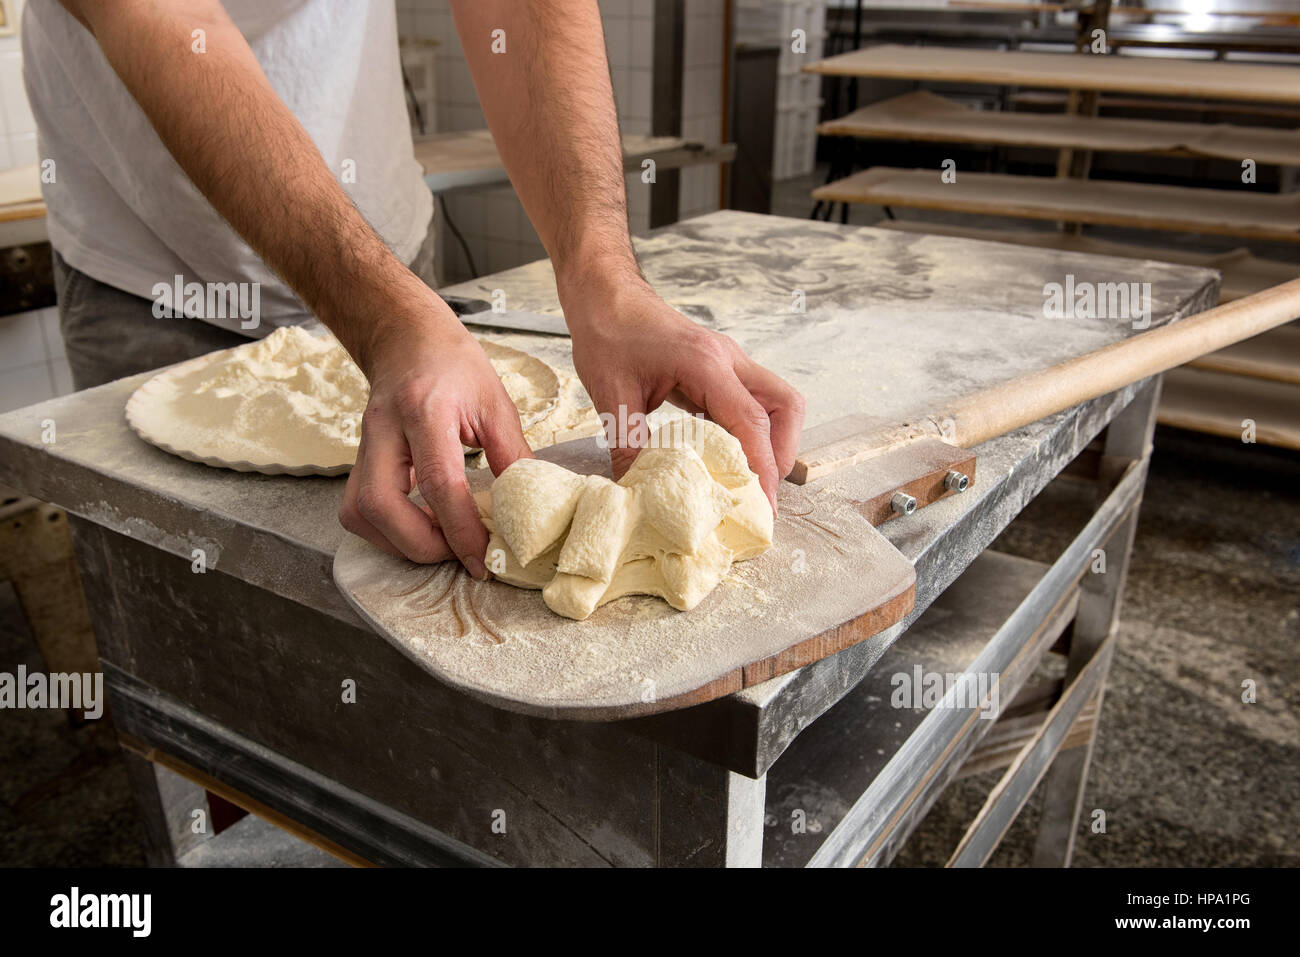 Köche Hände close-up geben Form zu Teig zum Backen von Brot, über hölzernen Schale in Bäckerei Stockfoto